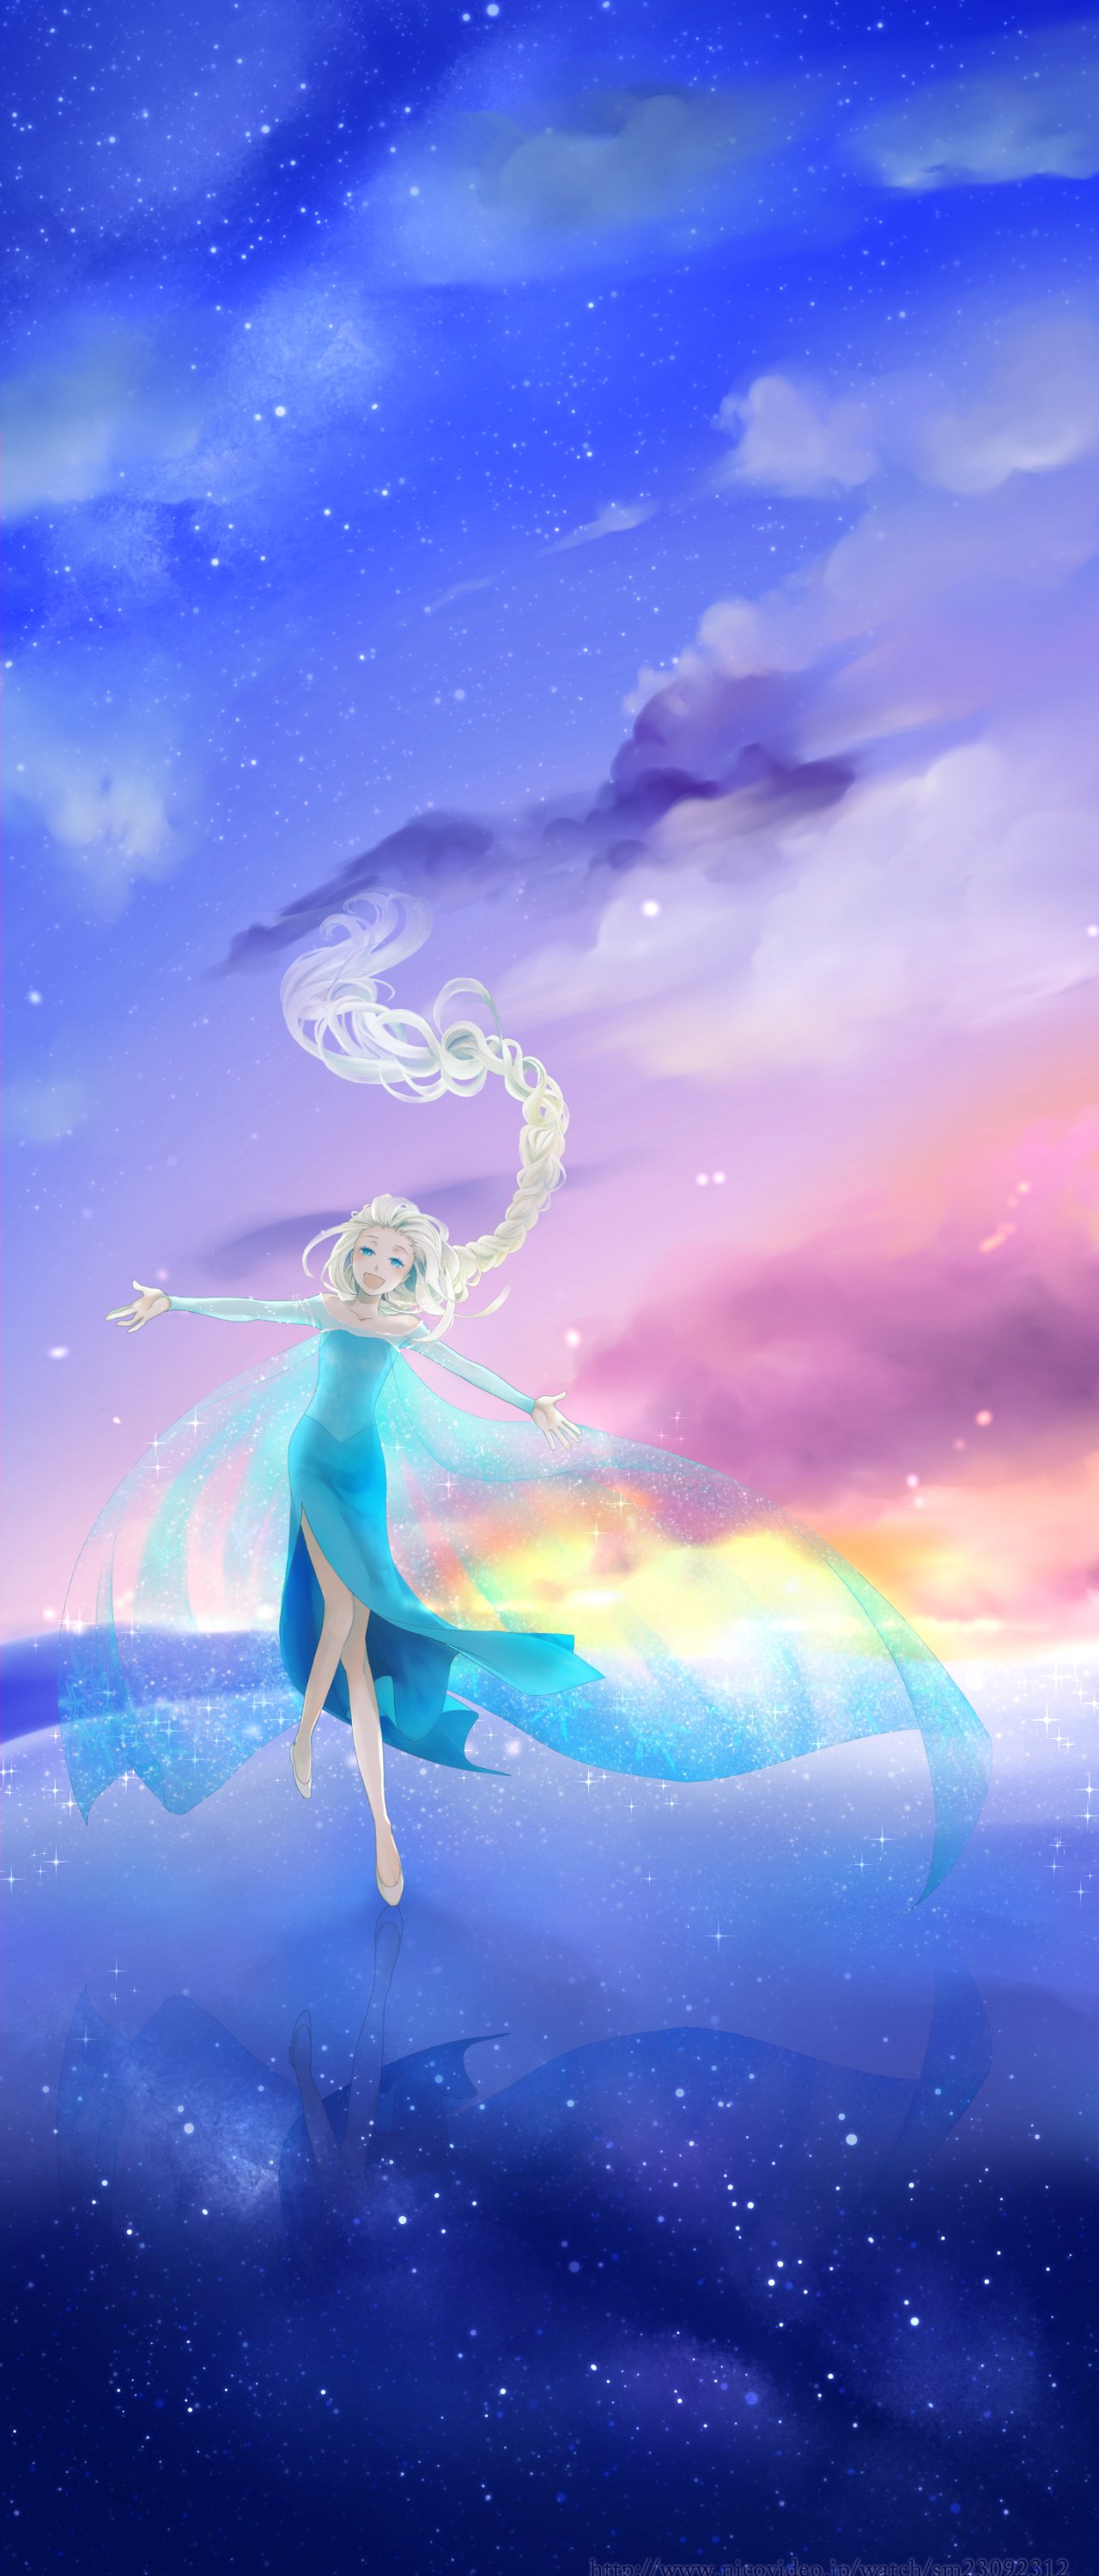 Princess Elsa, Cartoon, Frozen (movie), Fan art Wallpapers HD / Desktop